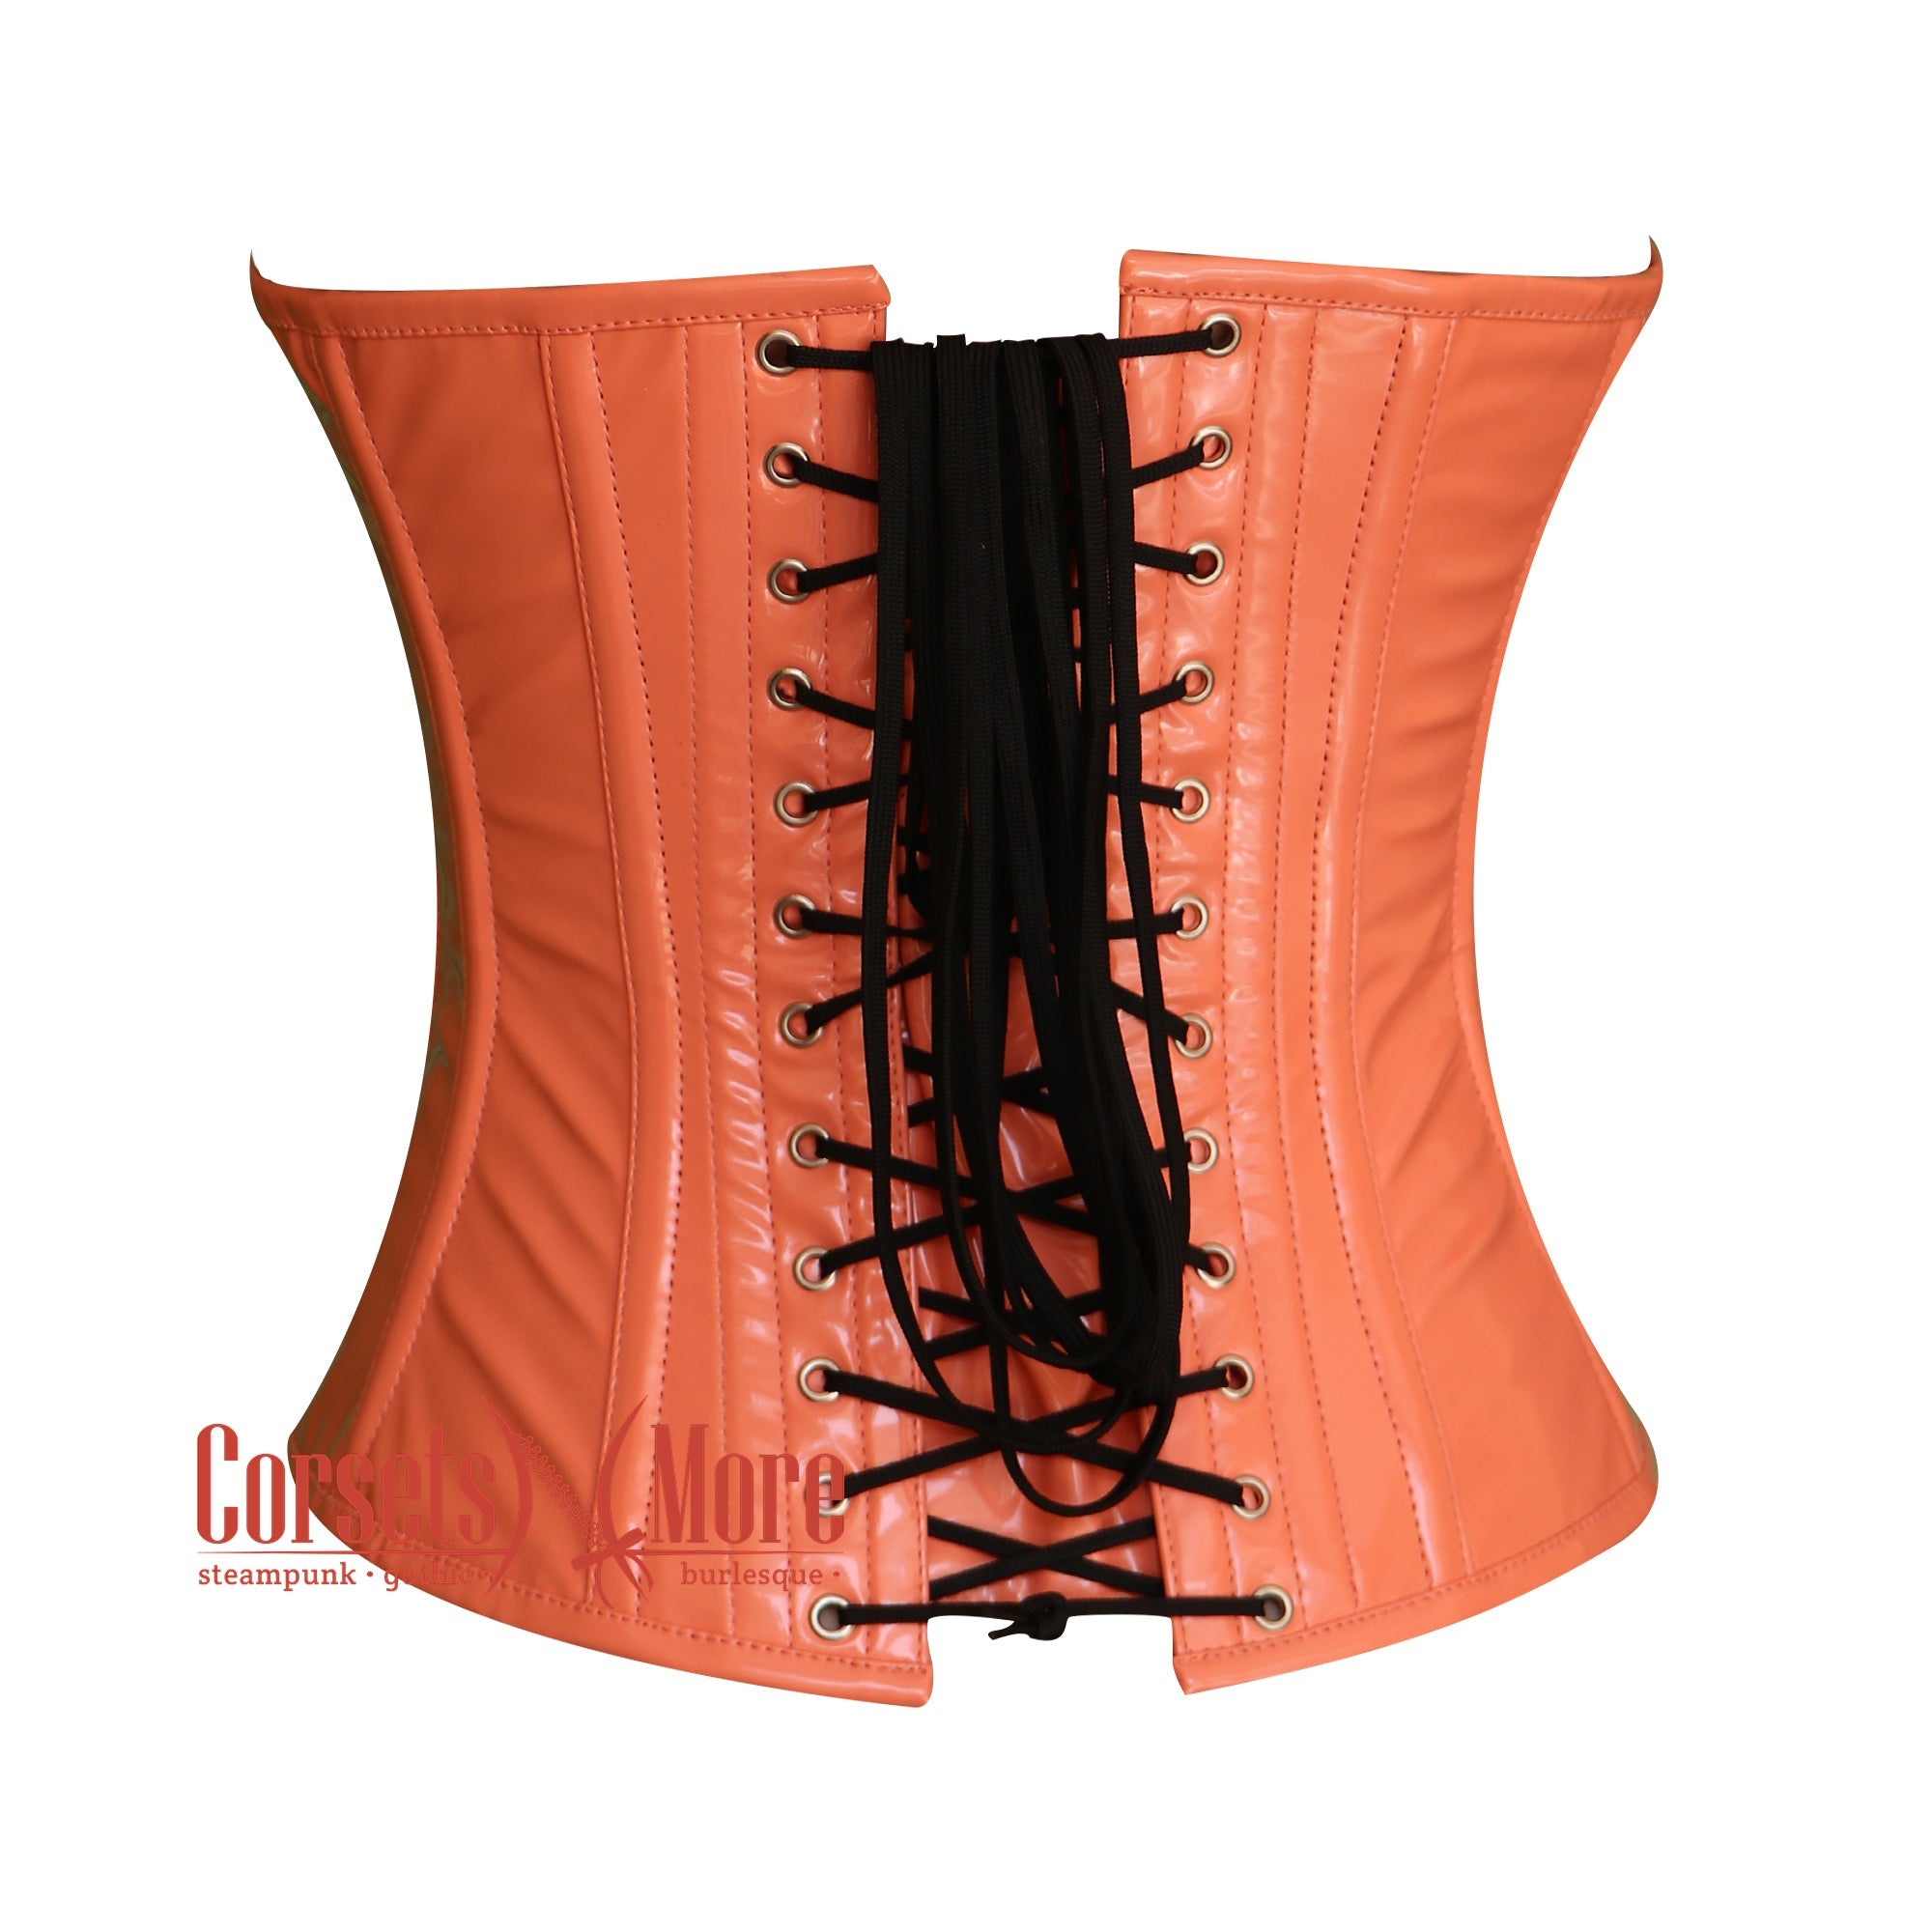 https://corsetsnmore.com/cdn/shop/products/CNM-863_2_ea565fc3-6e9f-4c99-bb53-100216c13004.jpg?v=1659514076